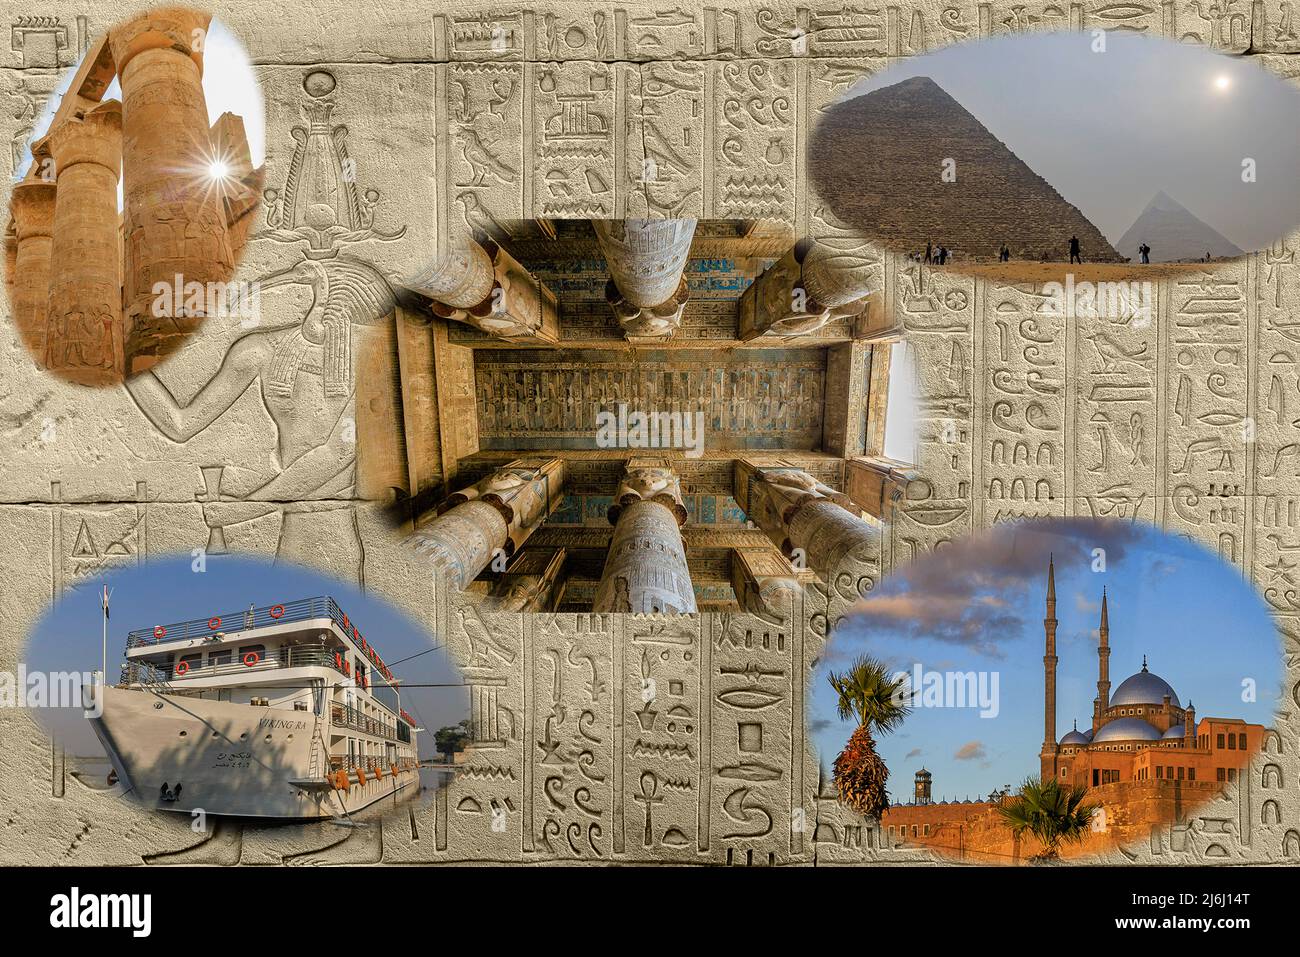 foto composita sullo sfondo di geroglifici di grandi piramidi, tempio di karnak tempio di dendera ali pasha moschea e vichinga ra nave da crociera sul nilo Foto Stock